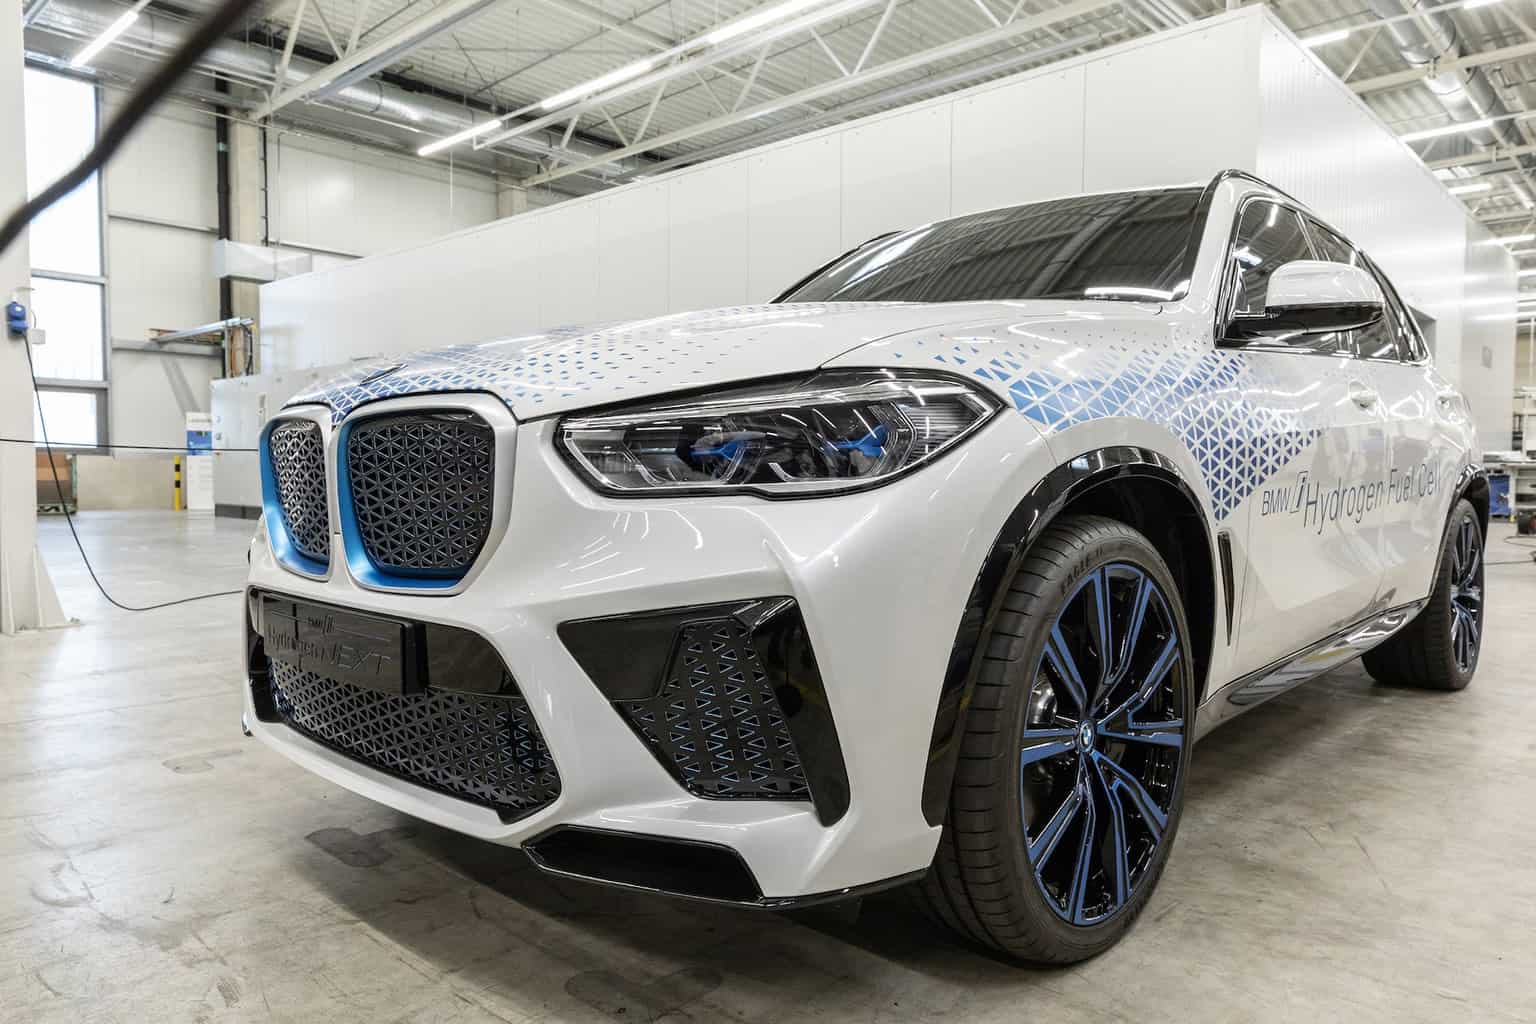 BMW-Wasserstoff-Brennstoffzelle-Hydrogen-Next